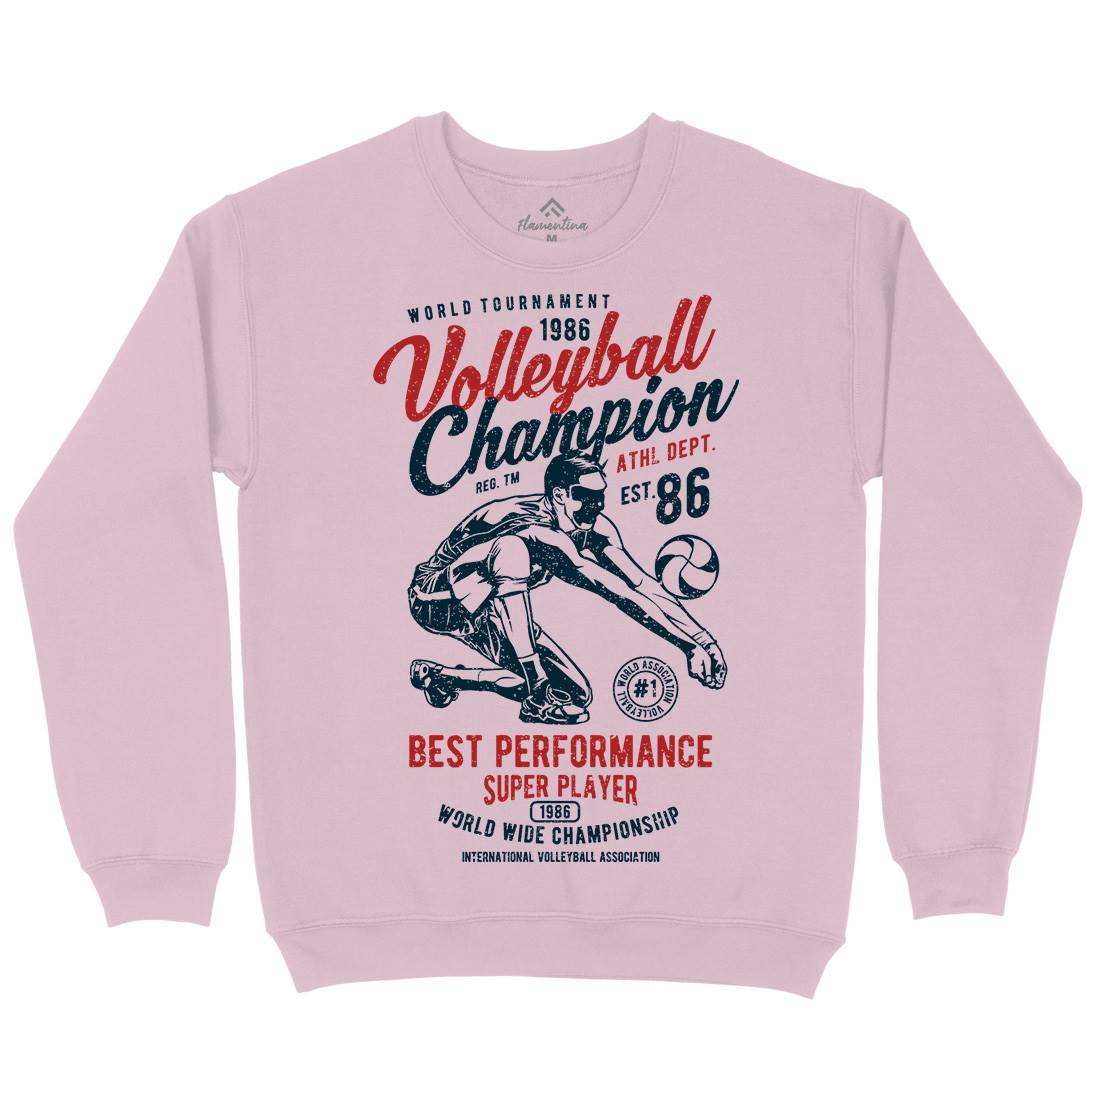 Volleyball Champion Kids Crew Neck Sweatshirt Sport A789